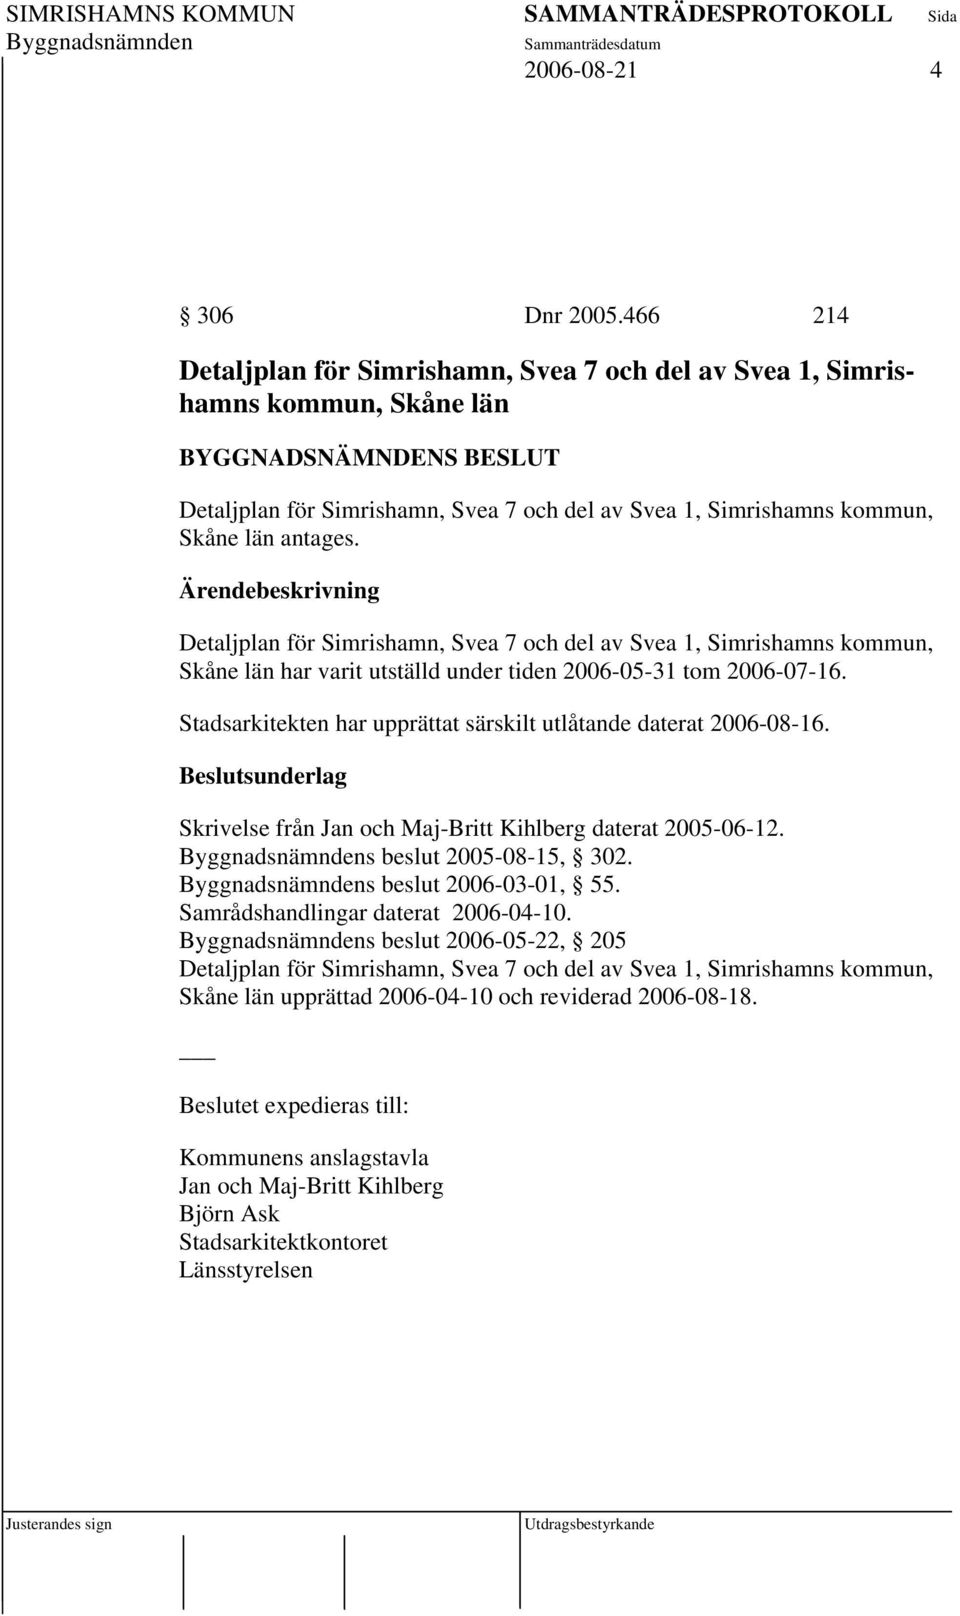 Detaljplan för Simrishamn, Svea 7 och del av Svea 1, Simrishamns kommun, Skåne län har varit utställd under tiden 2006-05-31 tom 2006-07-16.